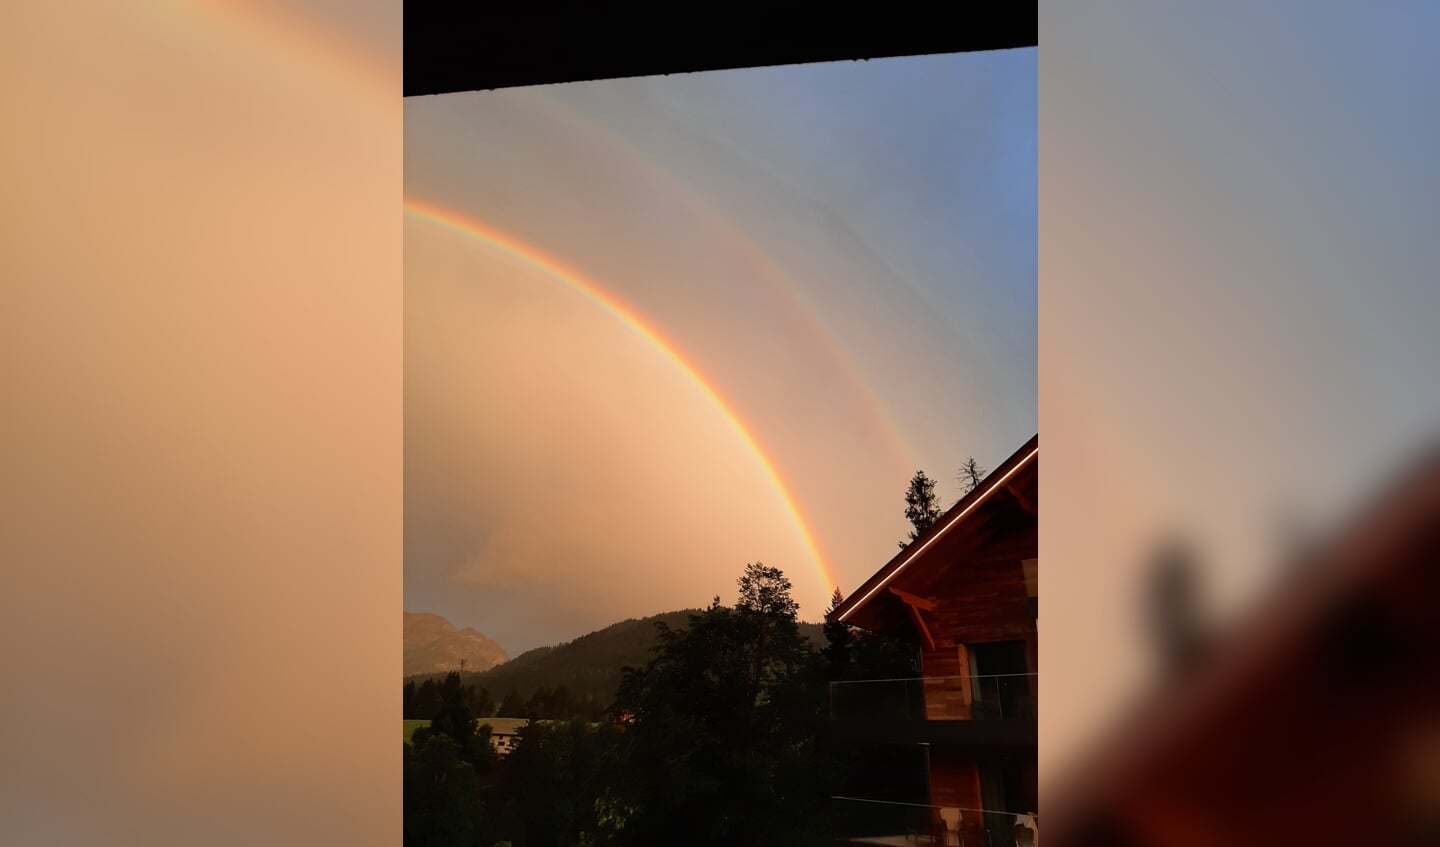 Prachtige dubbele regenboog in Oostenrijk , vakantie  29 juni 2021 in Fiberbrunn.